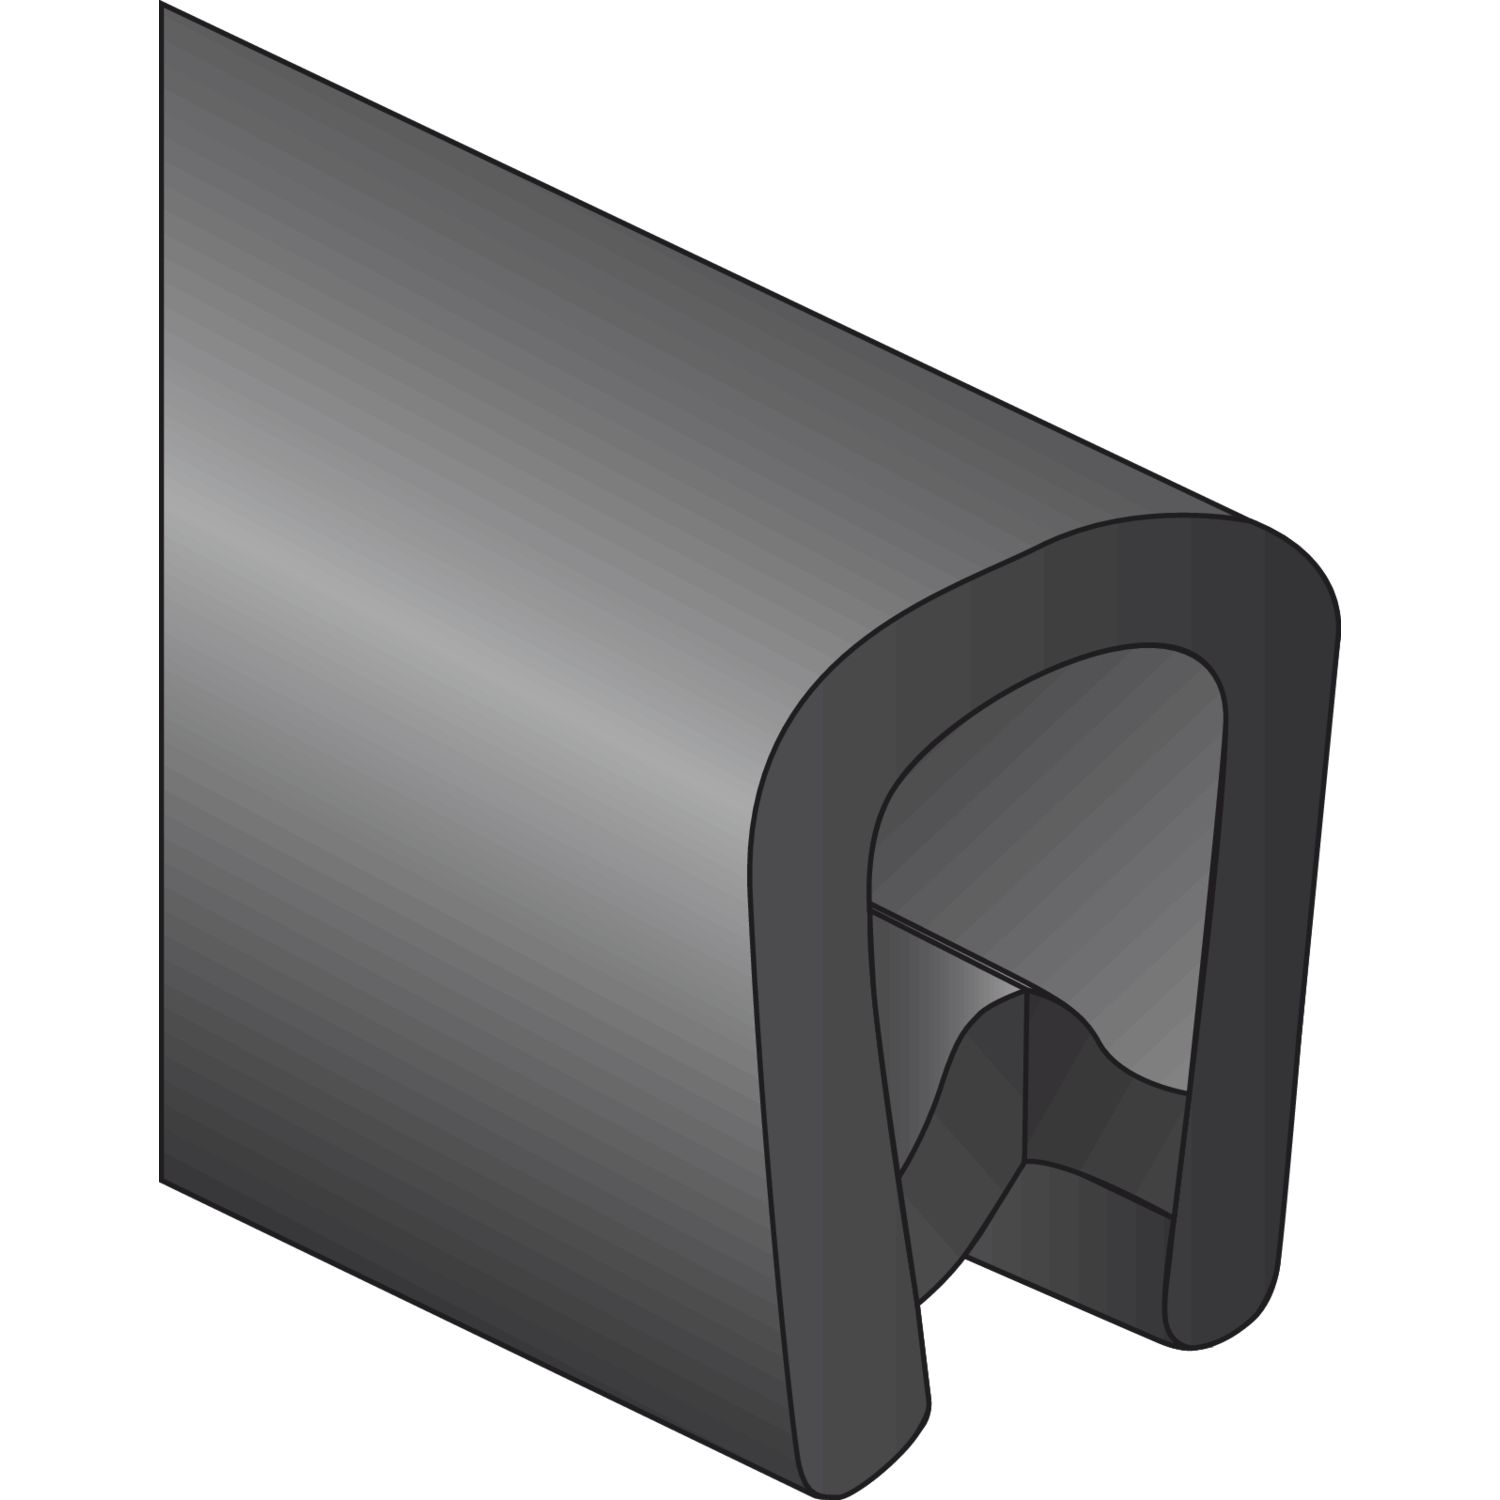 Kantenschutzprofil 9,5x6,5mm Rolle 50 m, Kunststoff schwarz